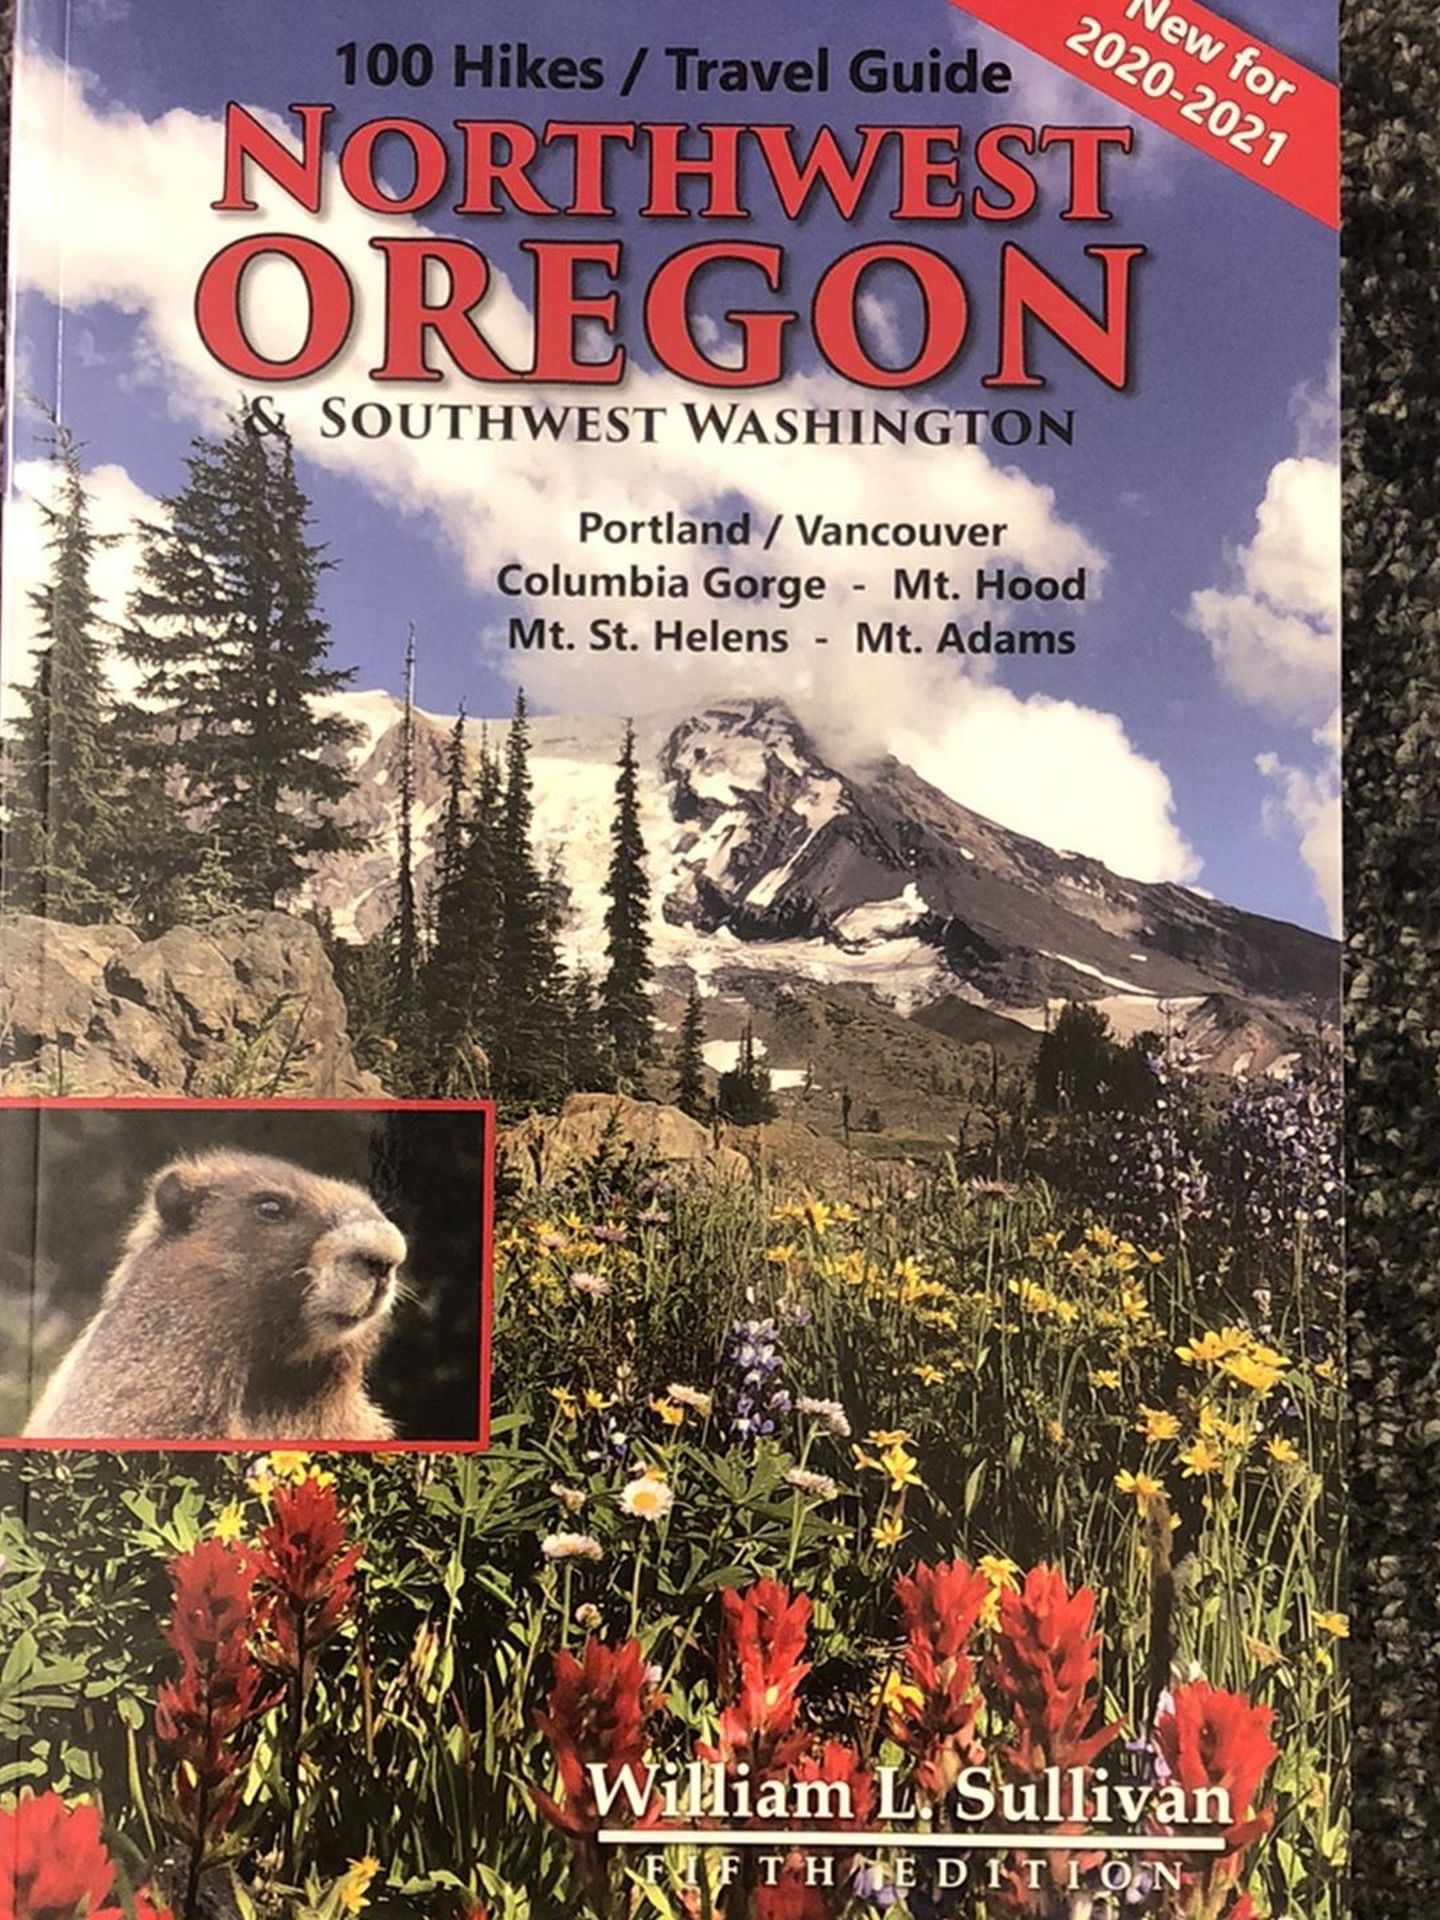 100 Hikes / Travel Guide - Northwest Oregon & Southwest Washington